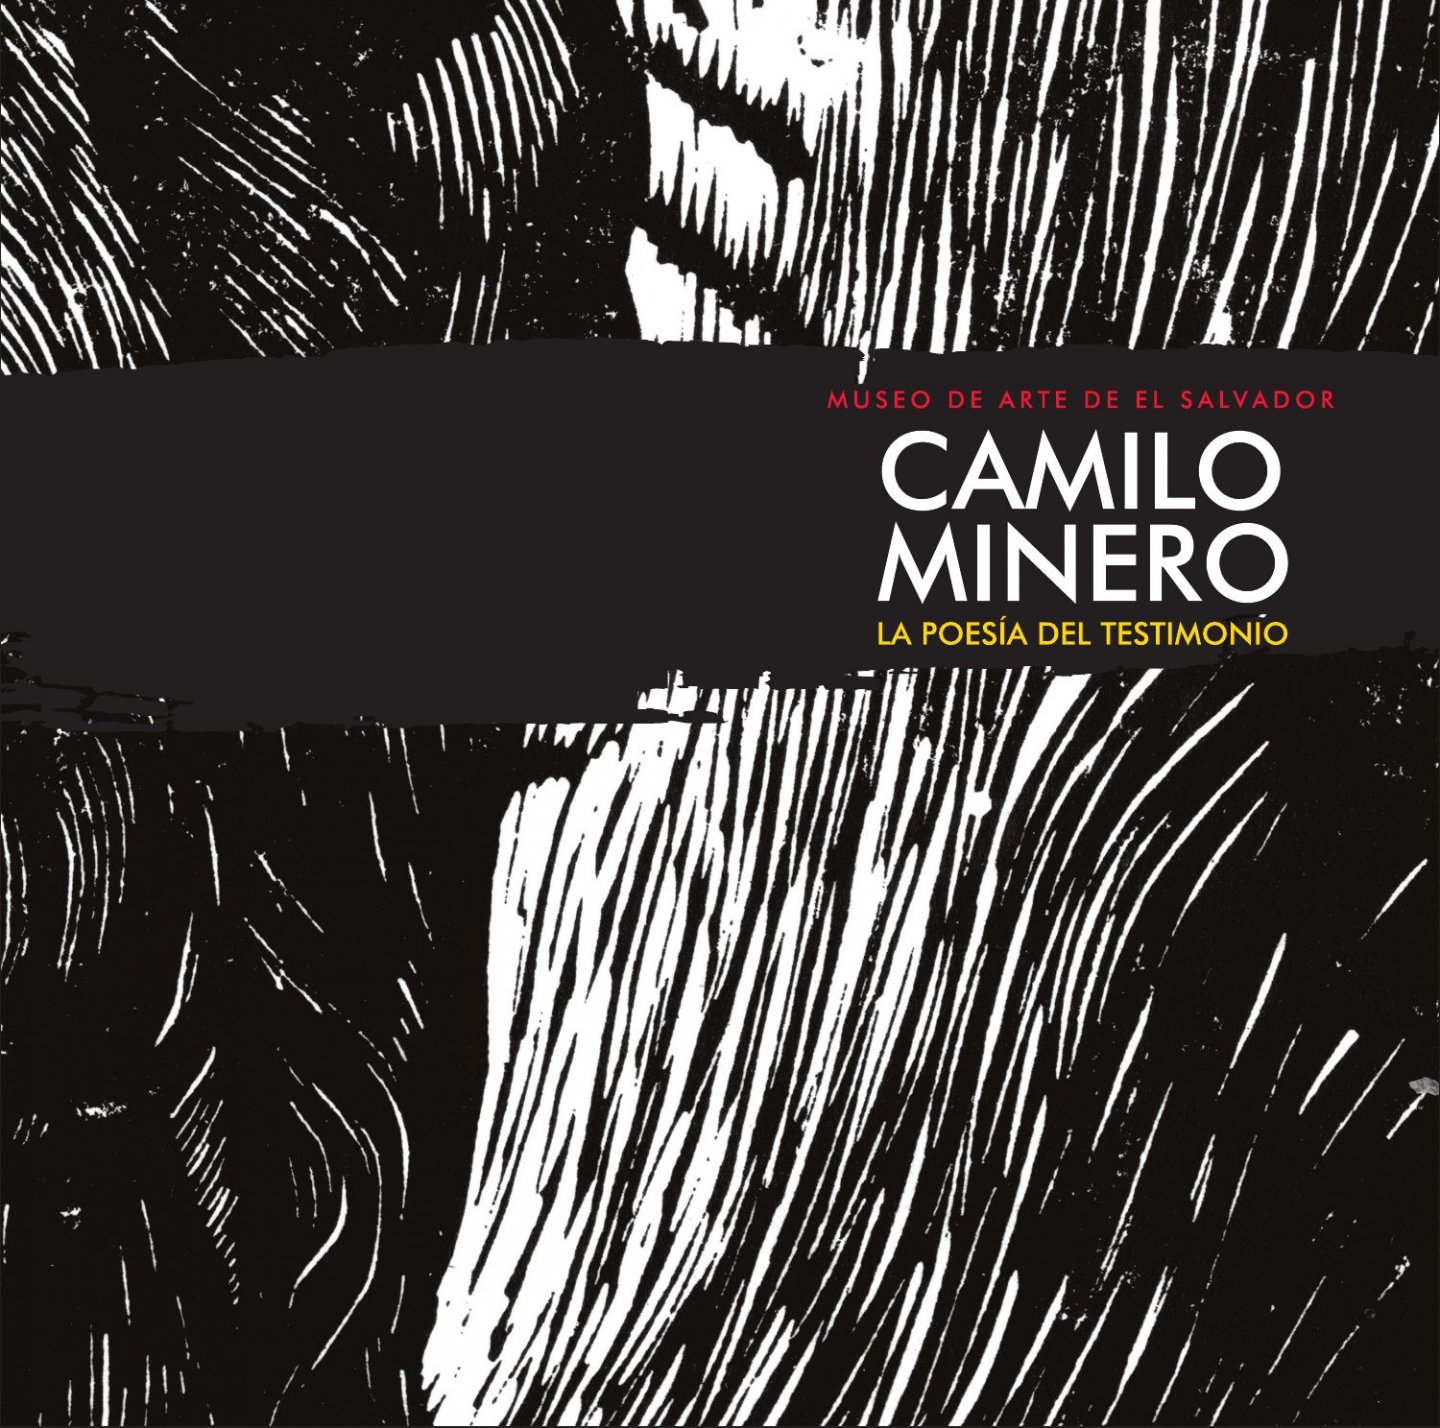 Bahamond, Astrid; Camilo Minero, et al. - Camilo Minero La poesía del testimonio